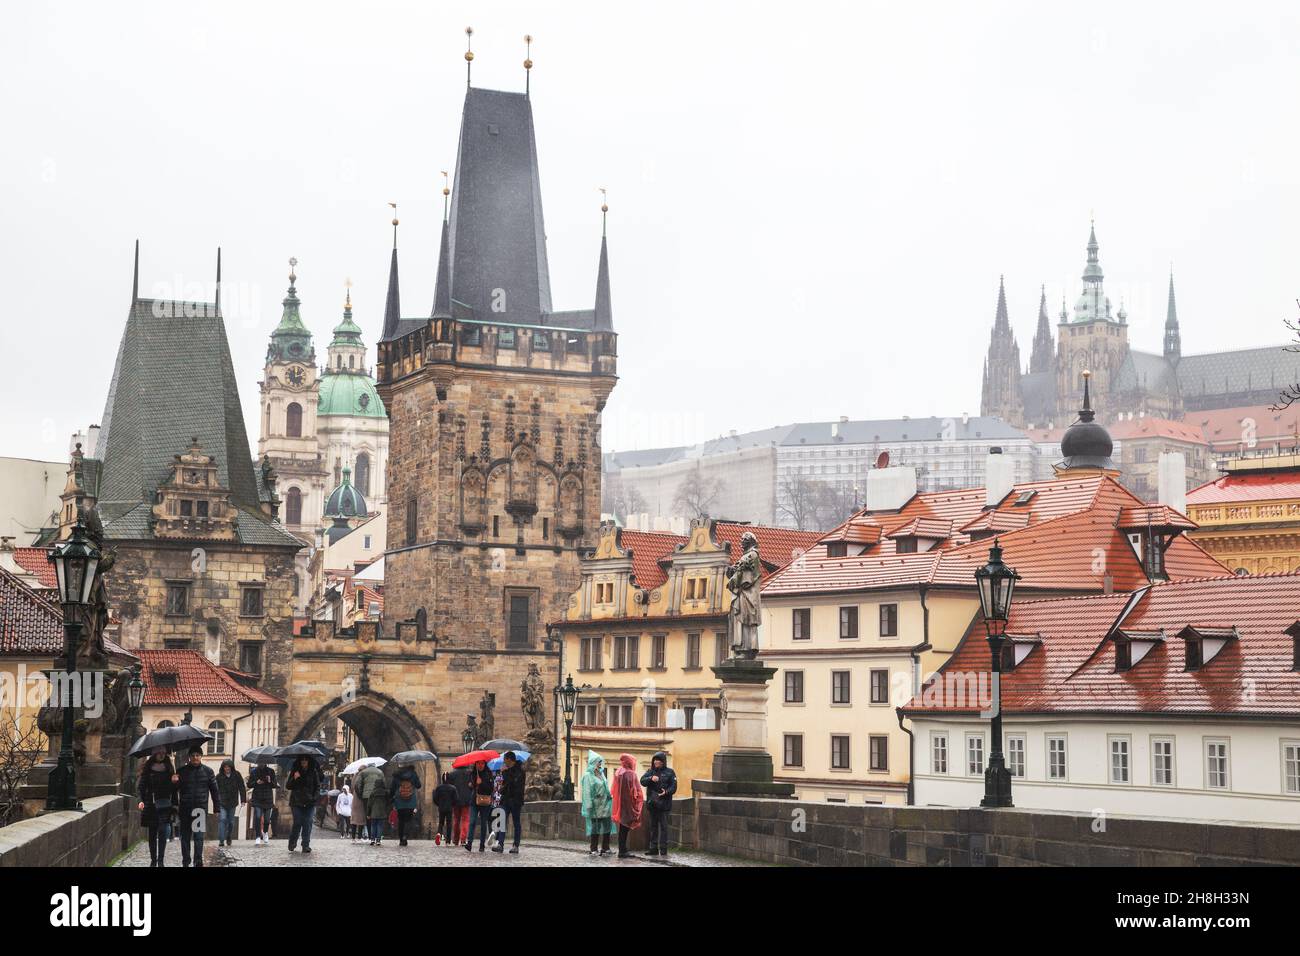 Praga - 11 marzo 2020: Ponte Carlo e Castello di Praga. Le persone con ombrelloni camminano sotto la pioggia sul Ponte Carlo Foto Stock